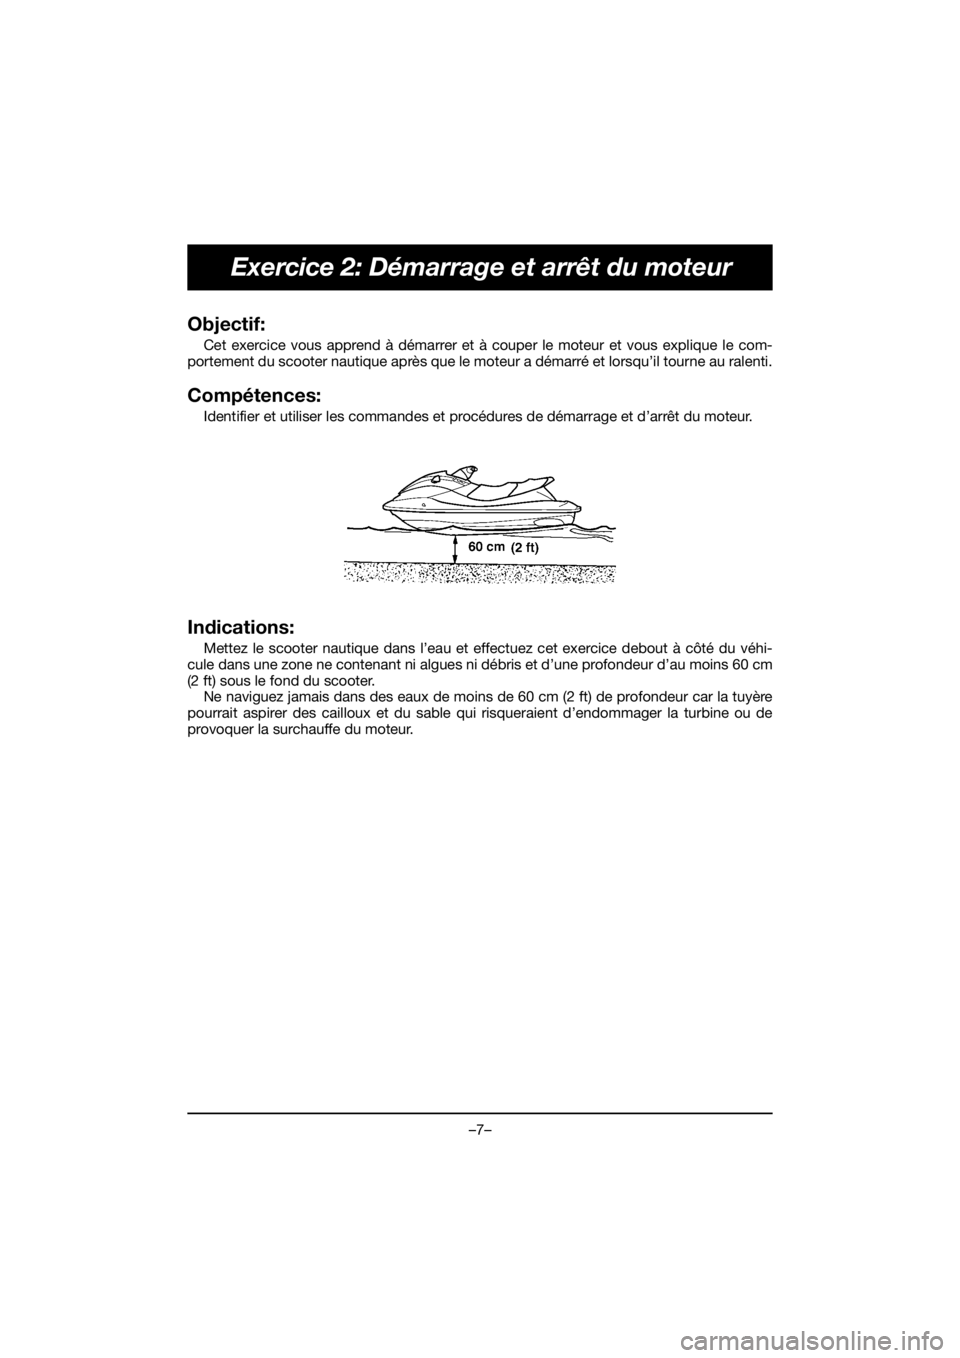 YAMAHA VX DELUXE 2019  Manuale de Empleo (in Spanish) –7–
Exercice 2: Démarrage et arrêt du moteur
Objectif: 
Cet exercice vous apprend à démarrer et à couper le moteur et vous explique le com-
portement du scooter nautique après que le moteur 